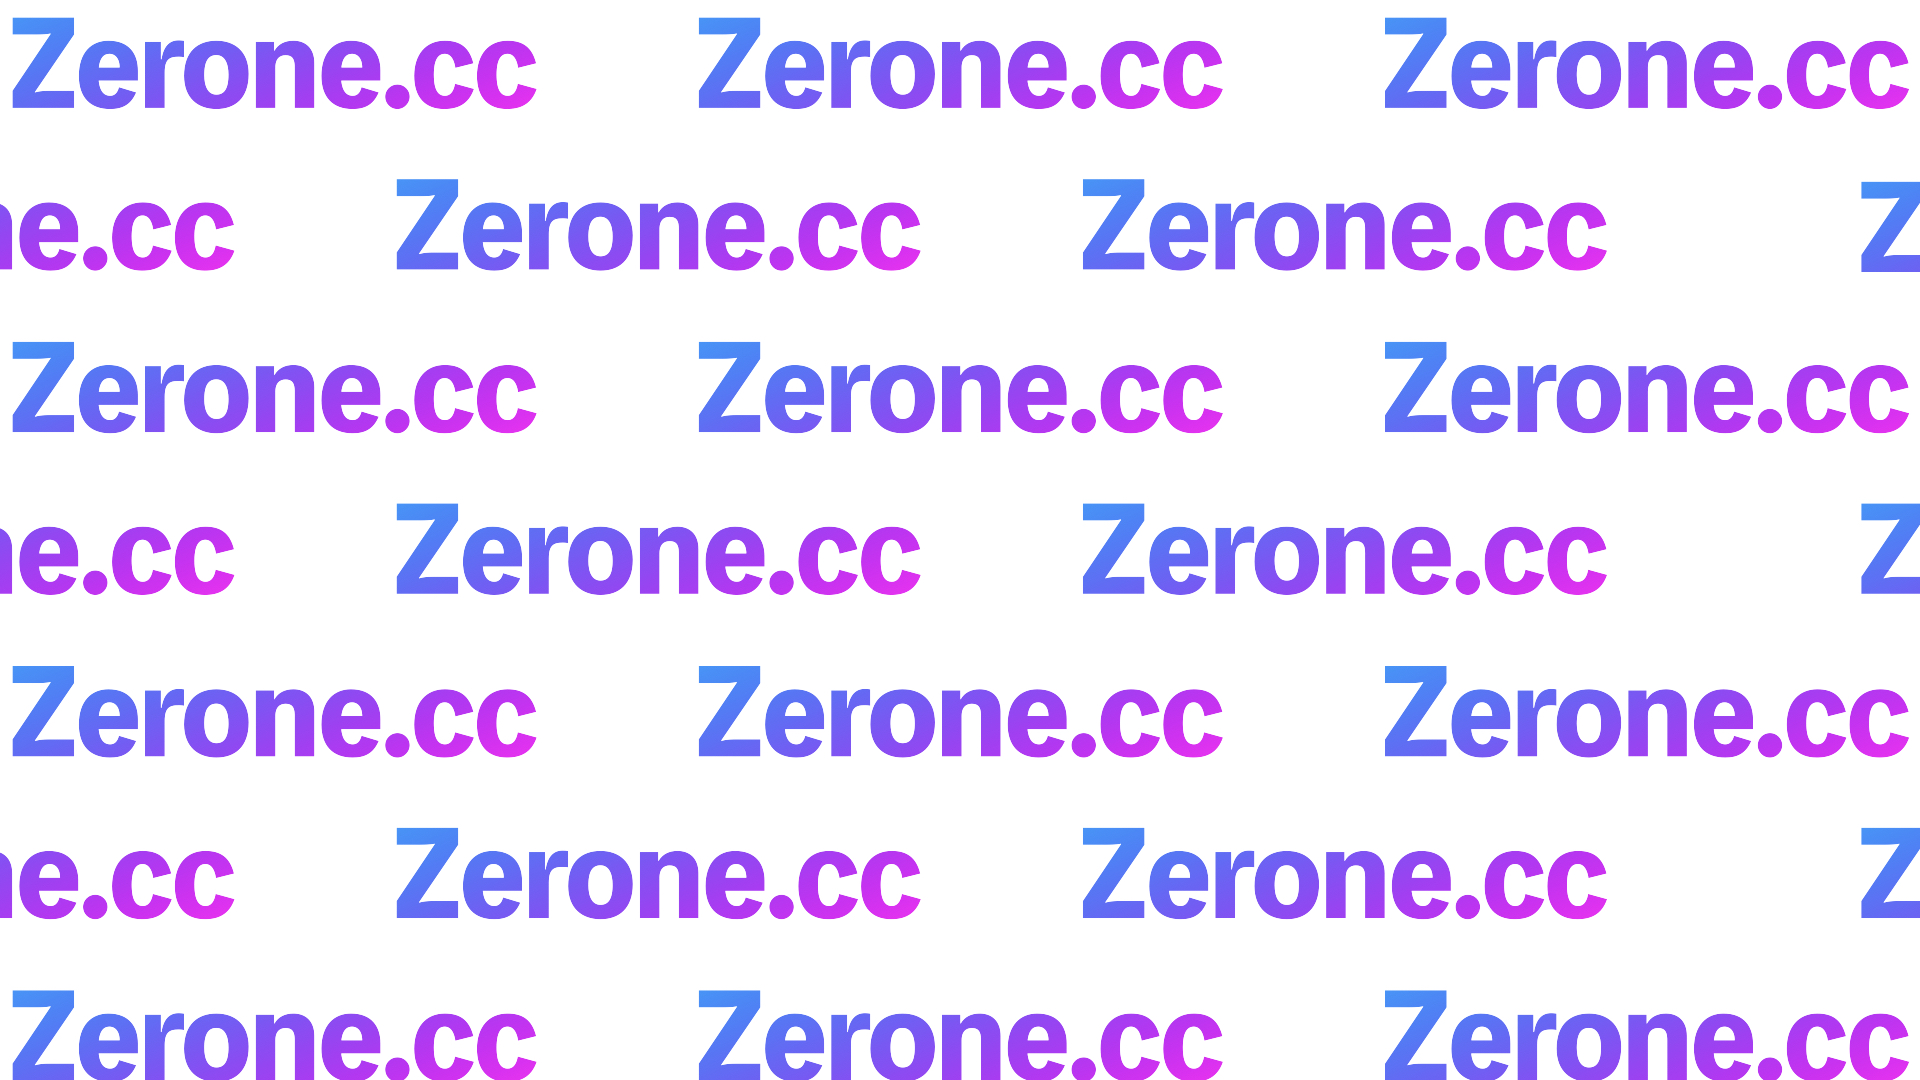 顧客のホンネを素早く獲得できるリサーチプラットフォーム「Zerone(ゼロン)」がα版を公開